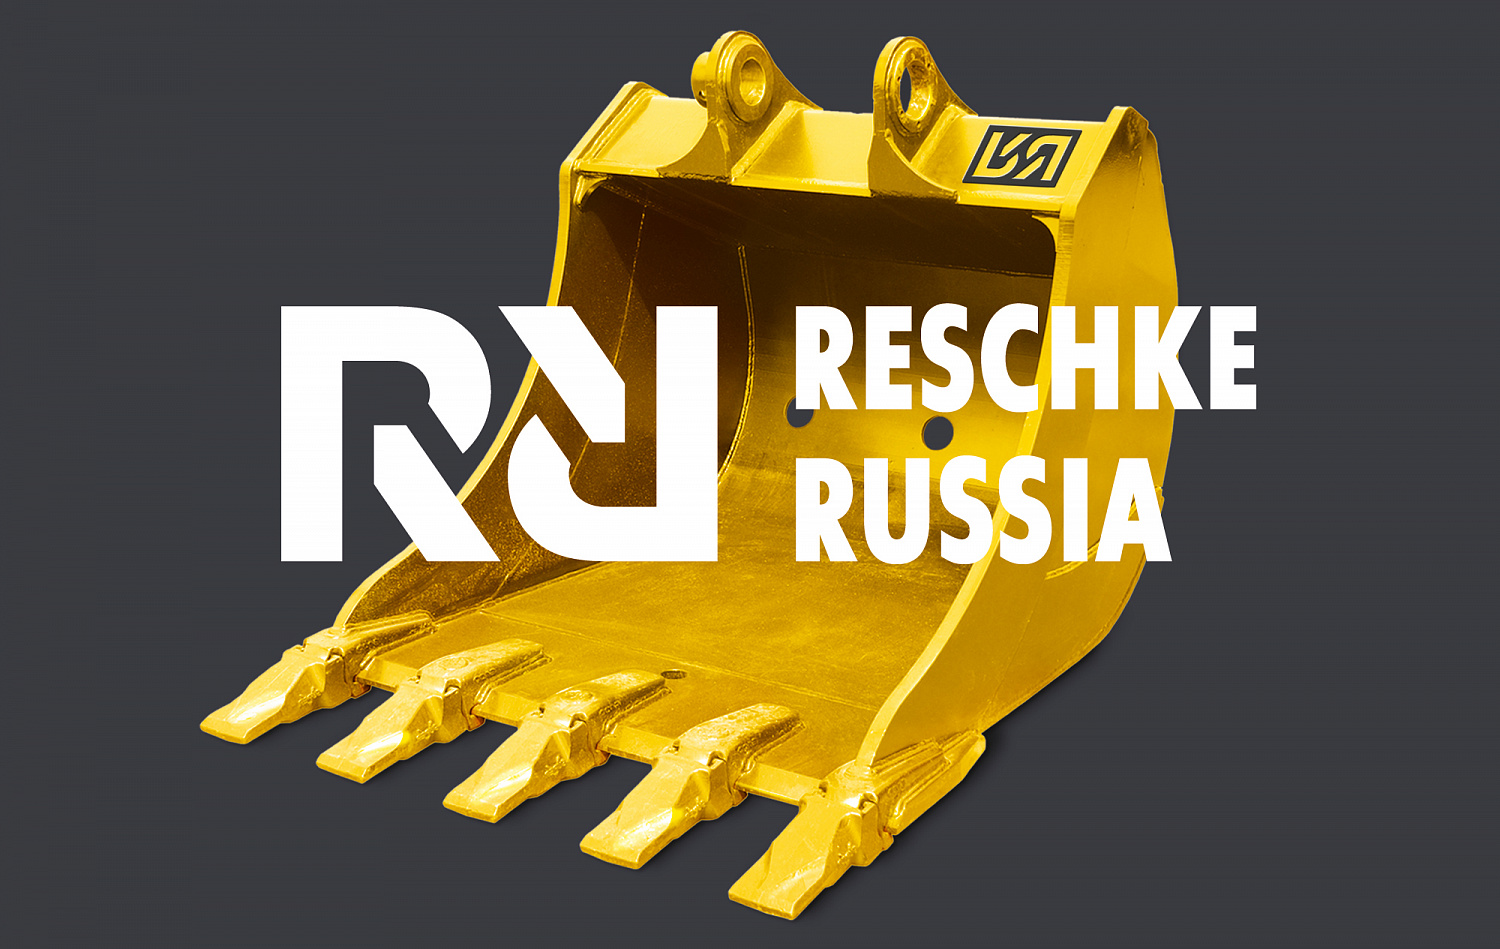 RESCHKE RUSSIA - Портфолио Depot